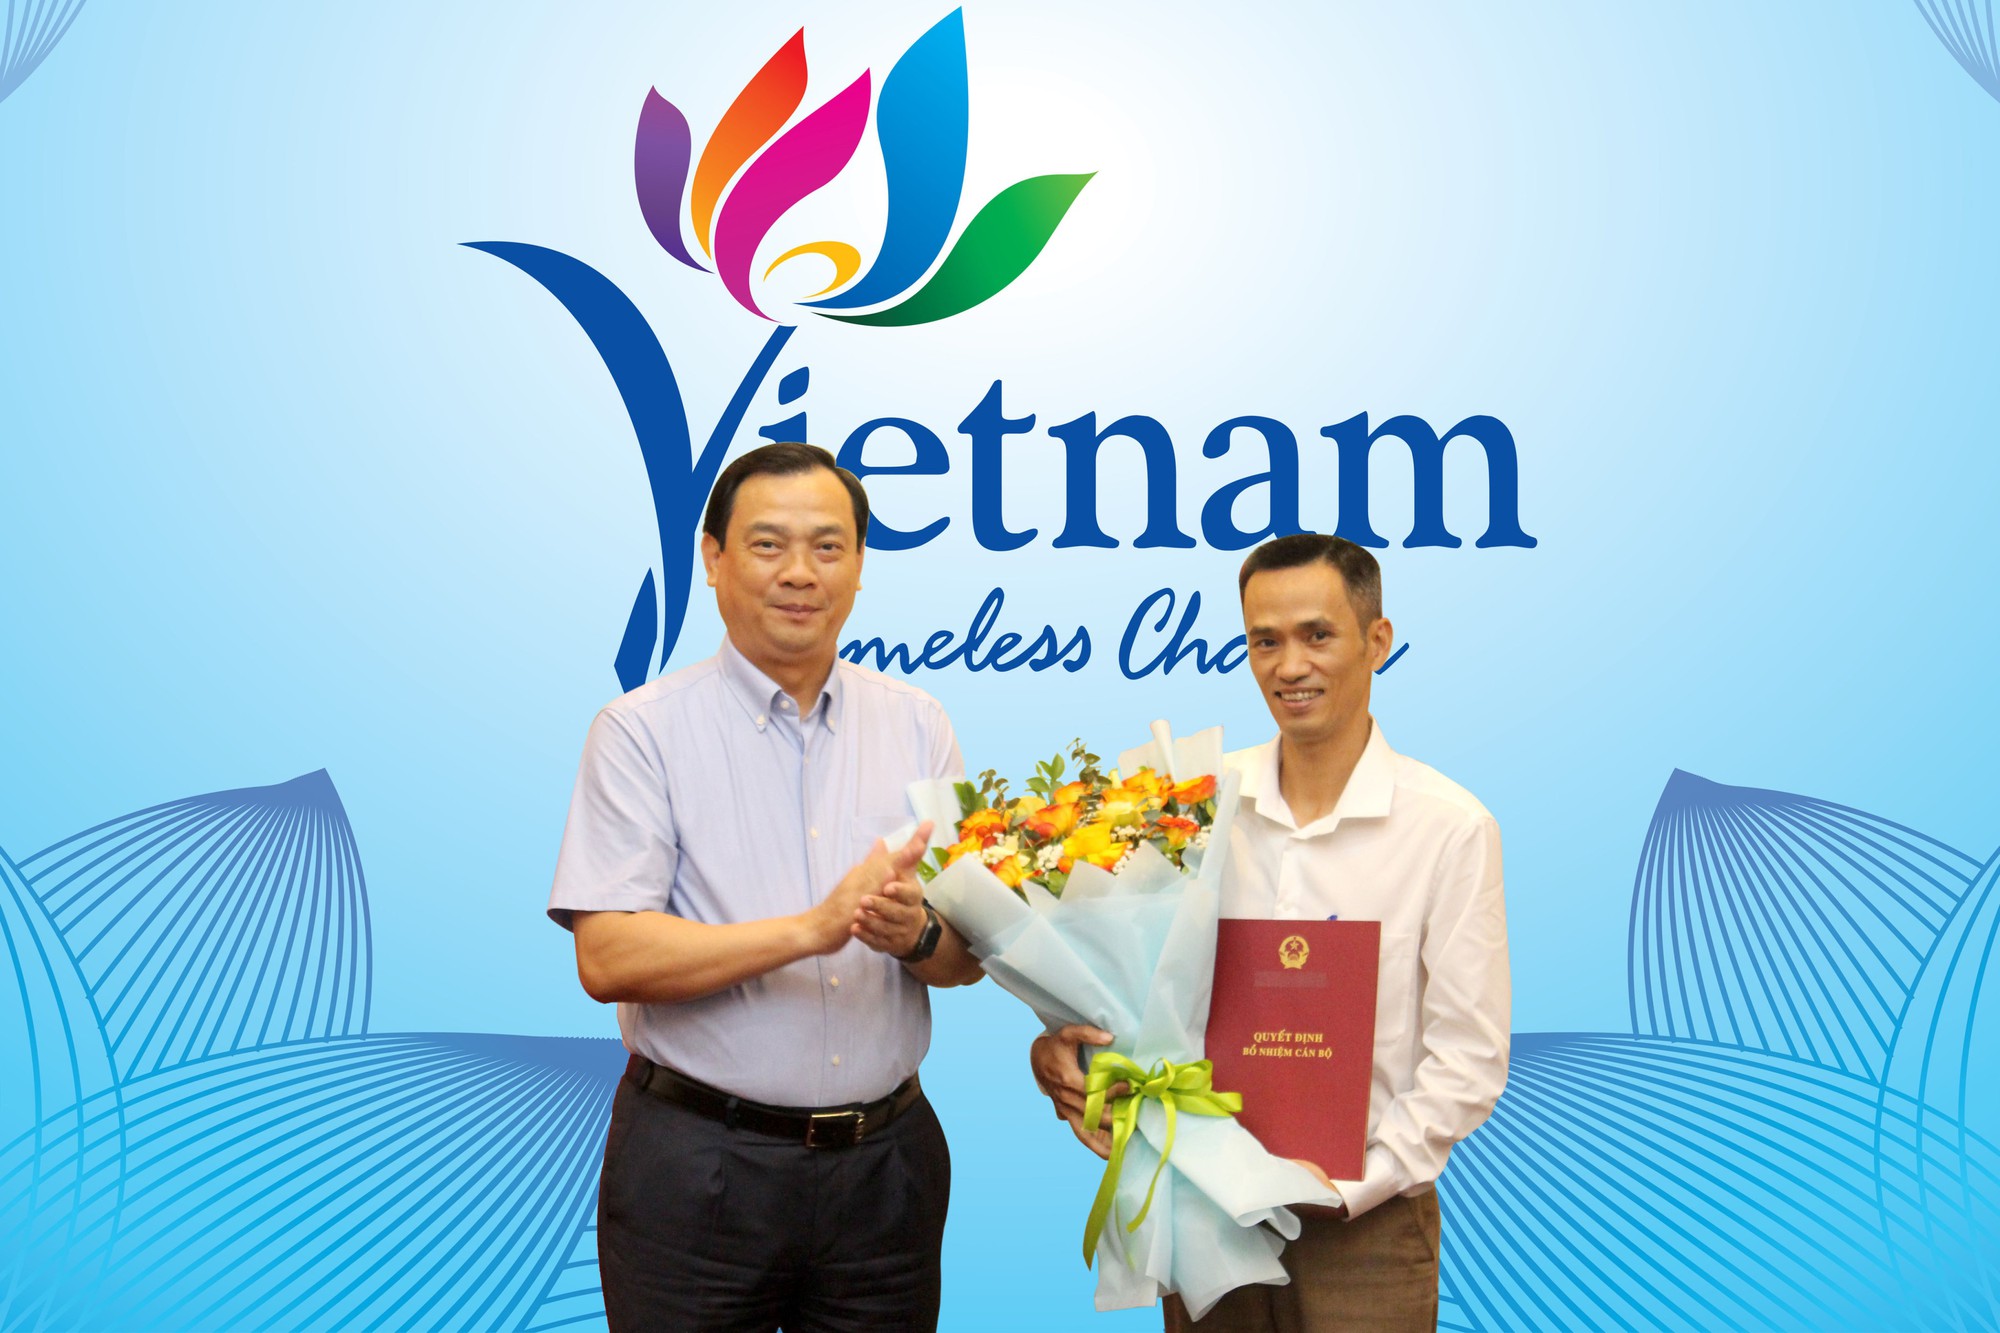 Cục Du lịch Quốc gia Việt Nam công bố Quyết định về công tác cán bộ - Ảnh 1.